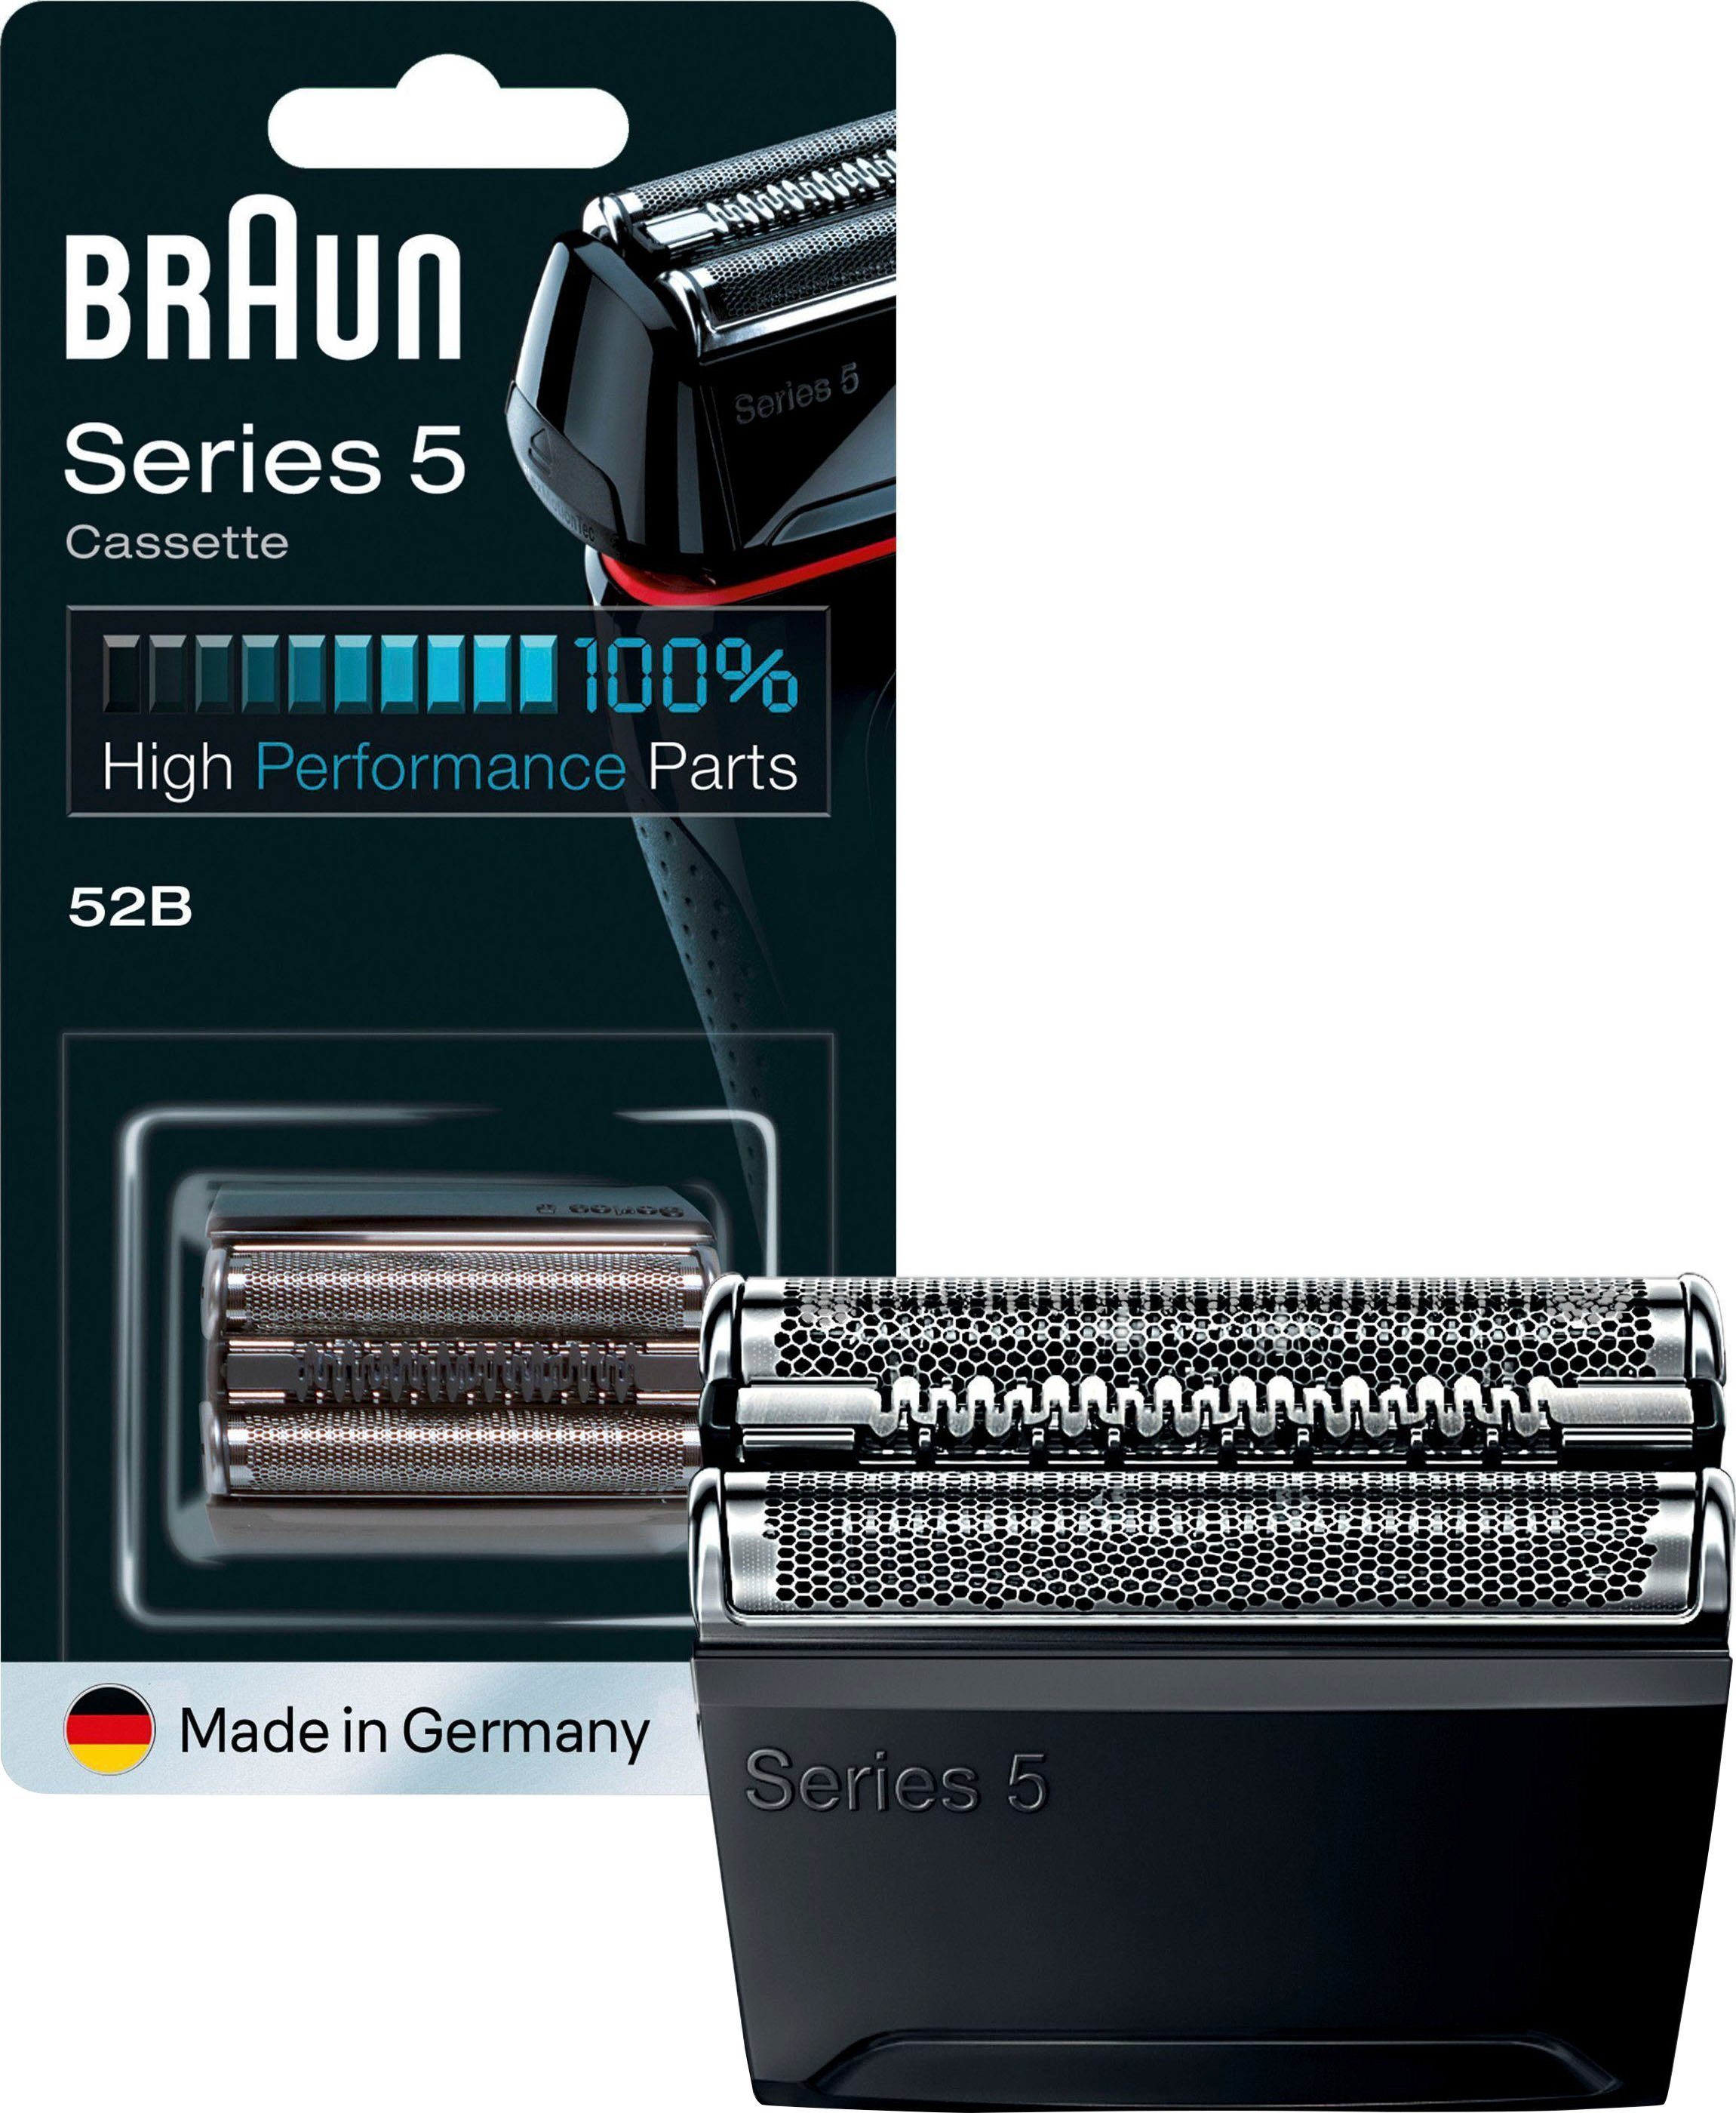 Braun Ladyshave Scherkopf Series 9 Flex 5380 81719635 günstig kaufen bei 